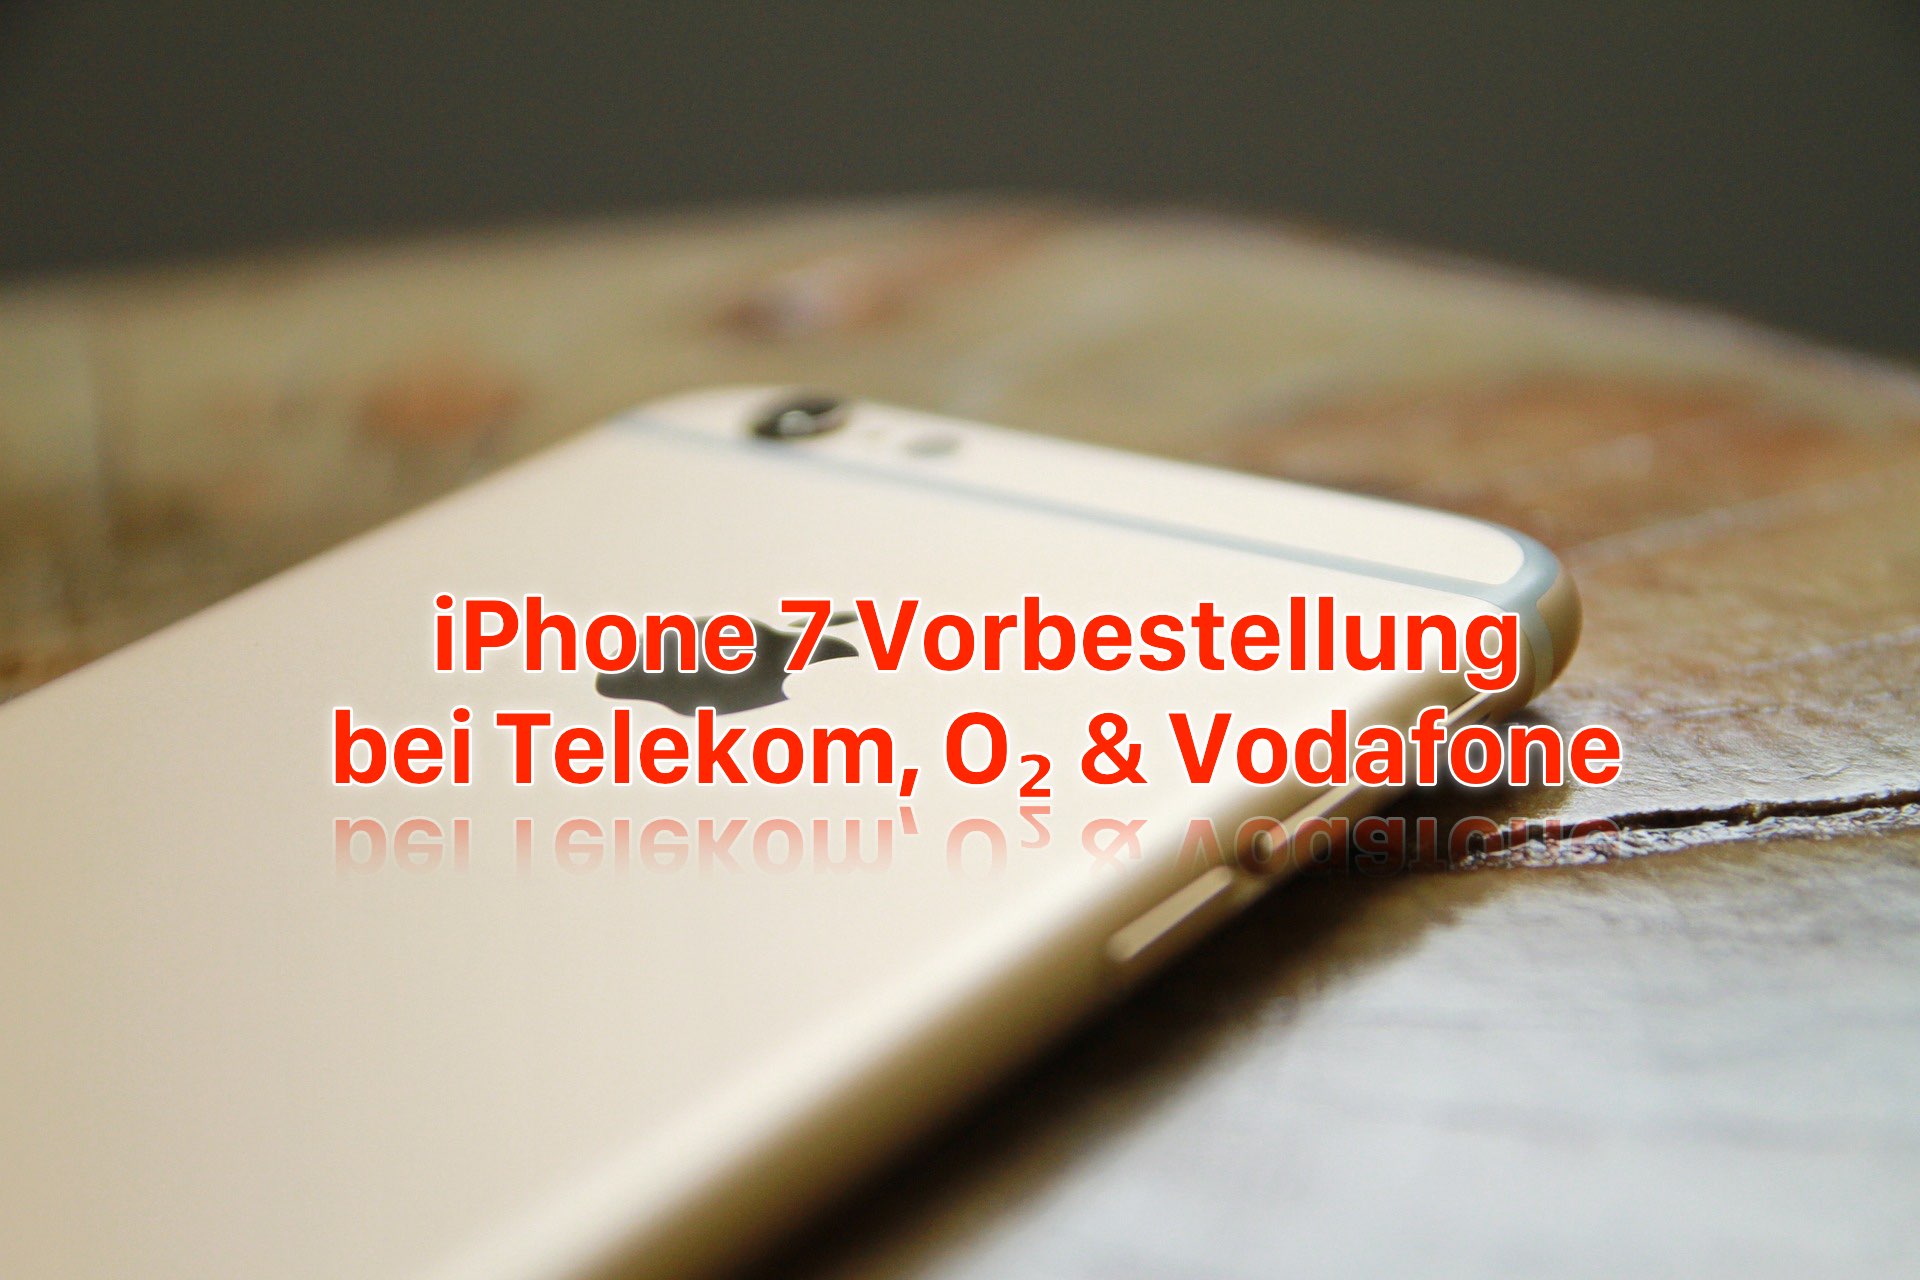 iPhone 7 Vorbestellung: bei Telekom, O2 und Vodafone iPhone 7 reservieren! 8